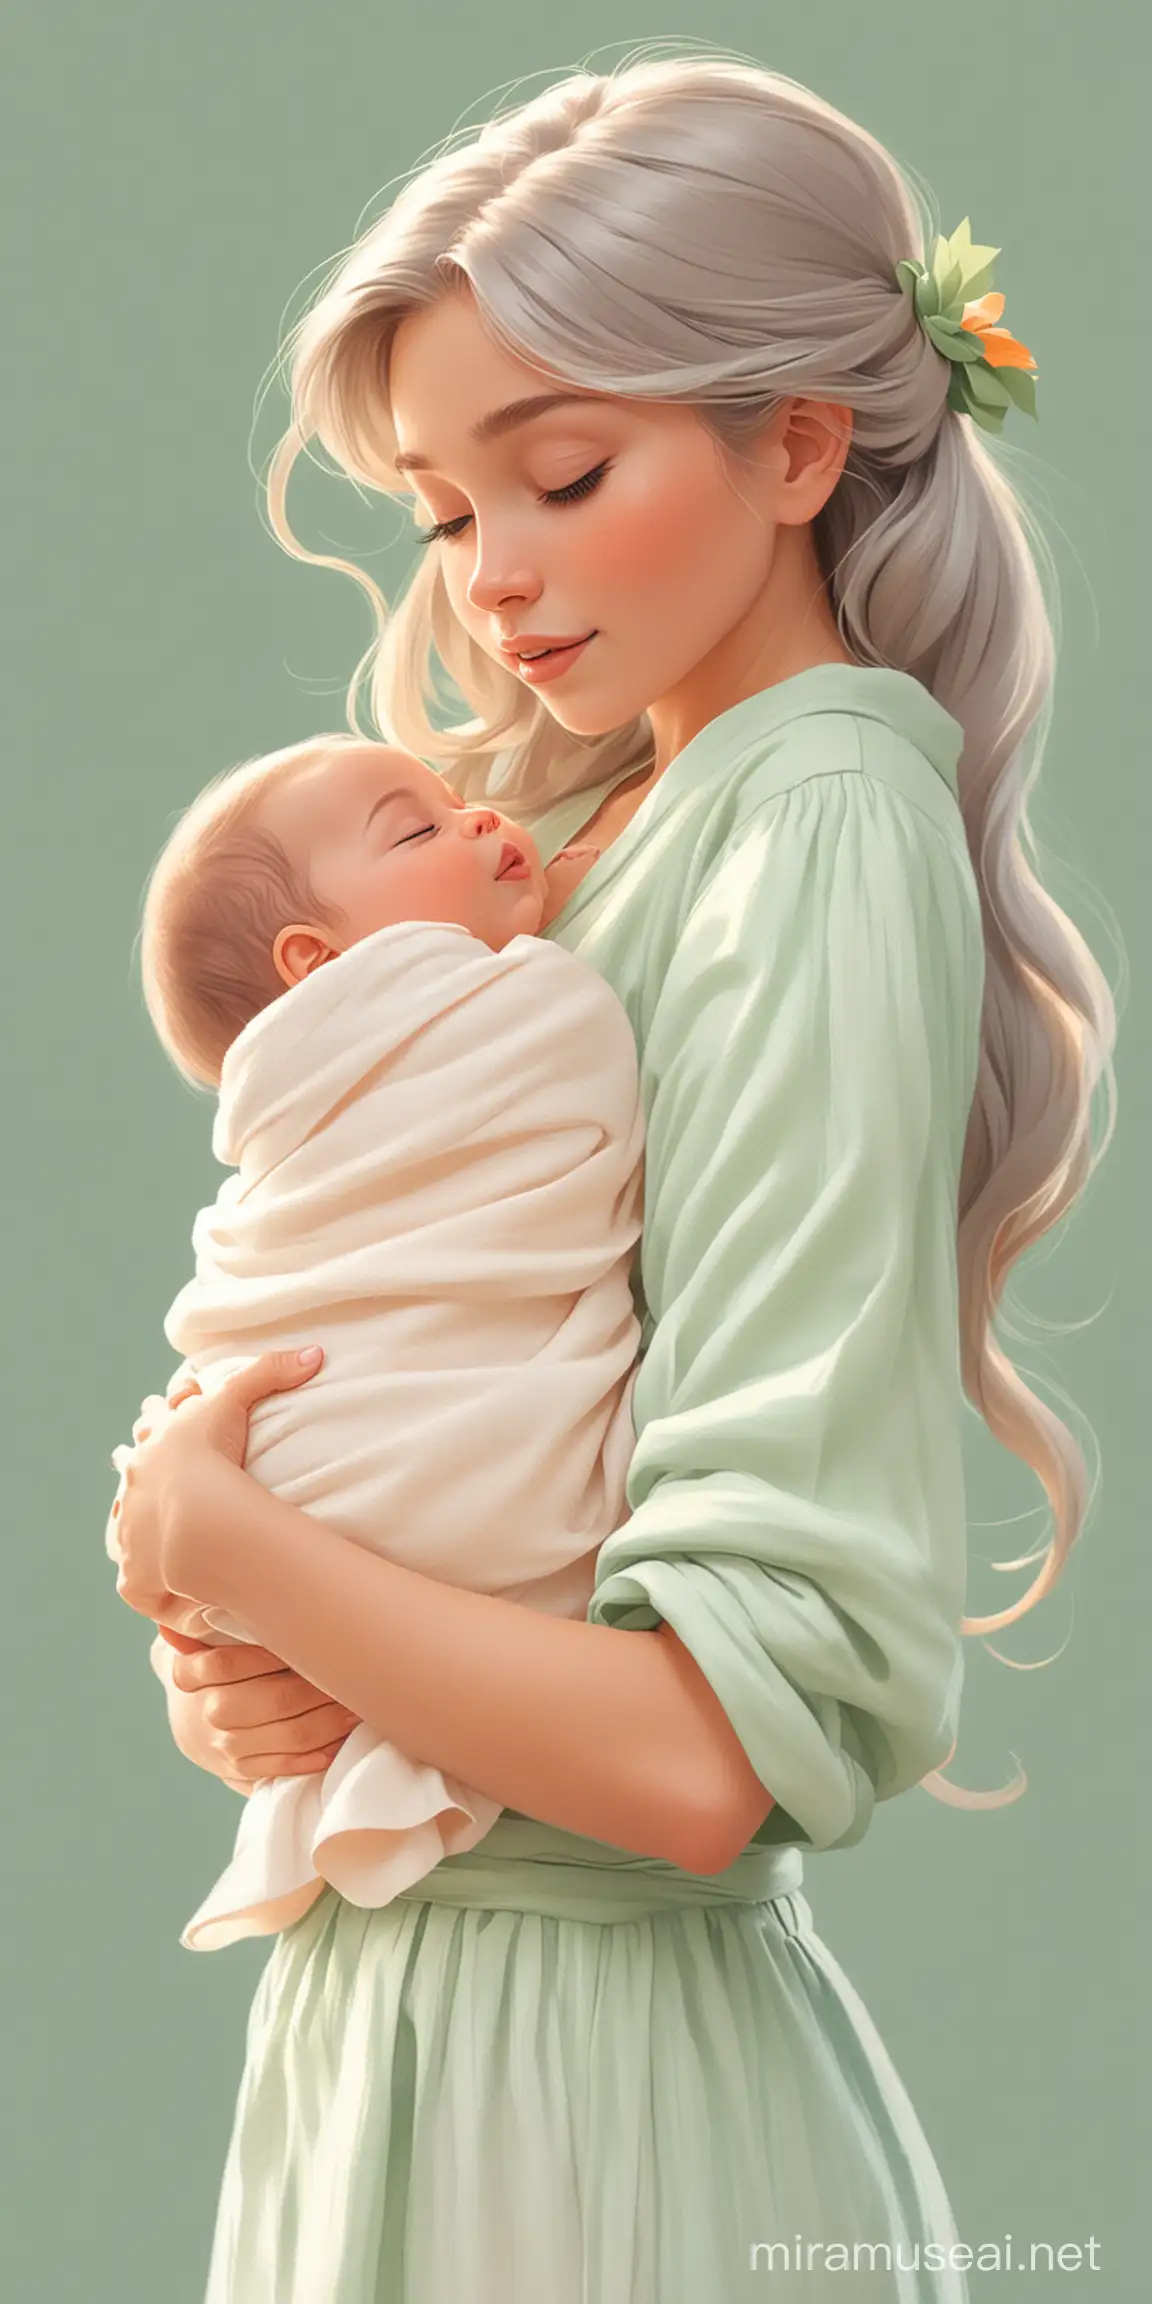 Девушка с новорождённым ребёнком на руках. Мультипликационный стиль Disney. Пастельные цвета. Зеленый, оранжевый, белый